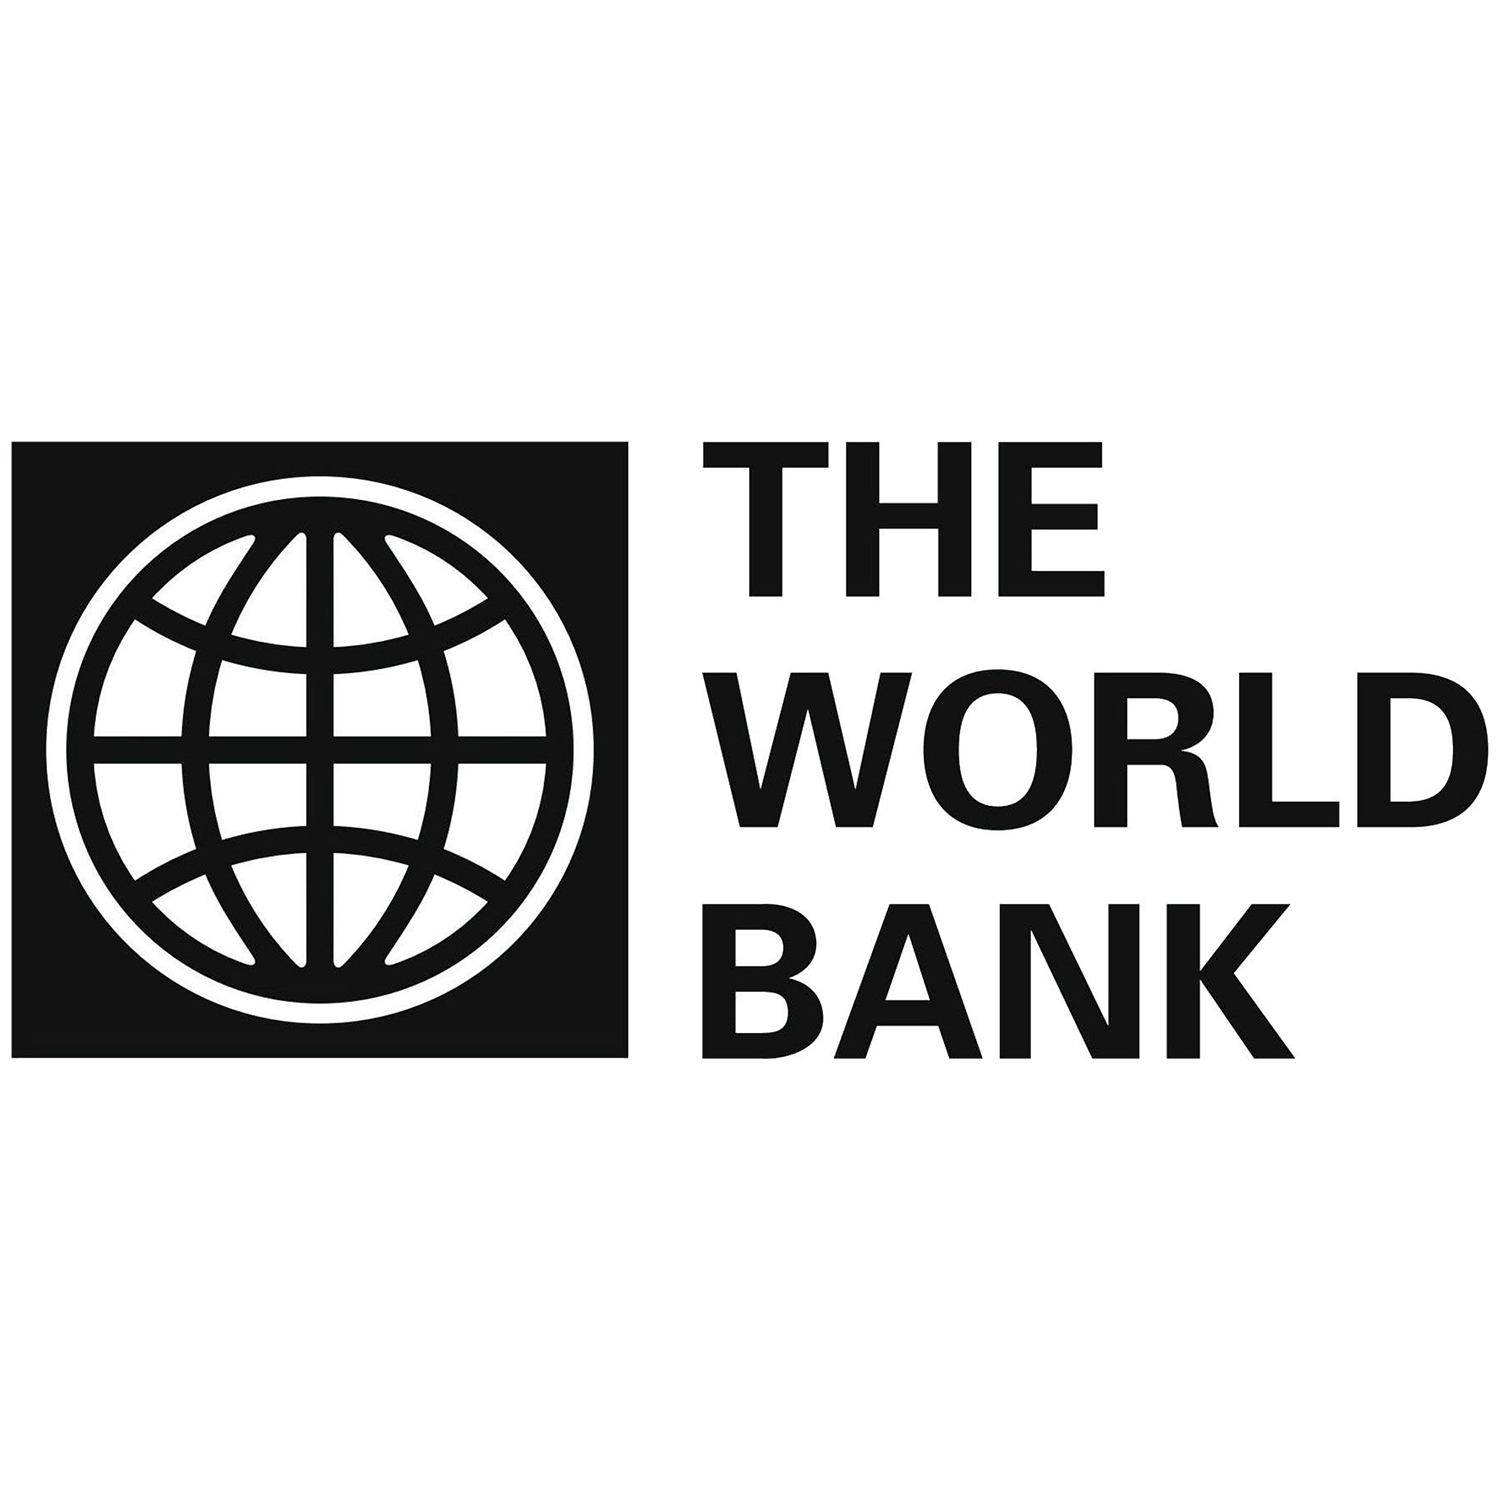 Фонд всемирный банк. Всемирный банк. Всемирного банка (the World Bank). Всемирный банк США. Всемирный банк логотип.